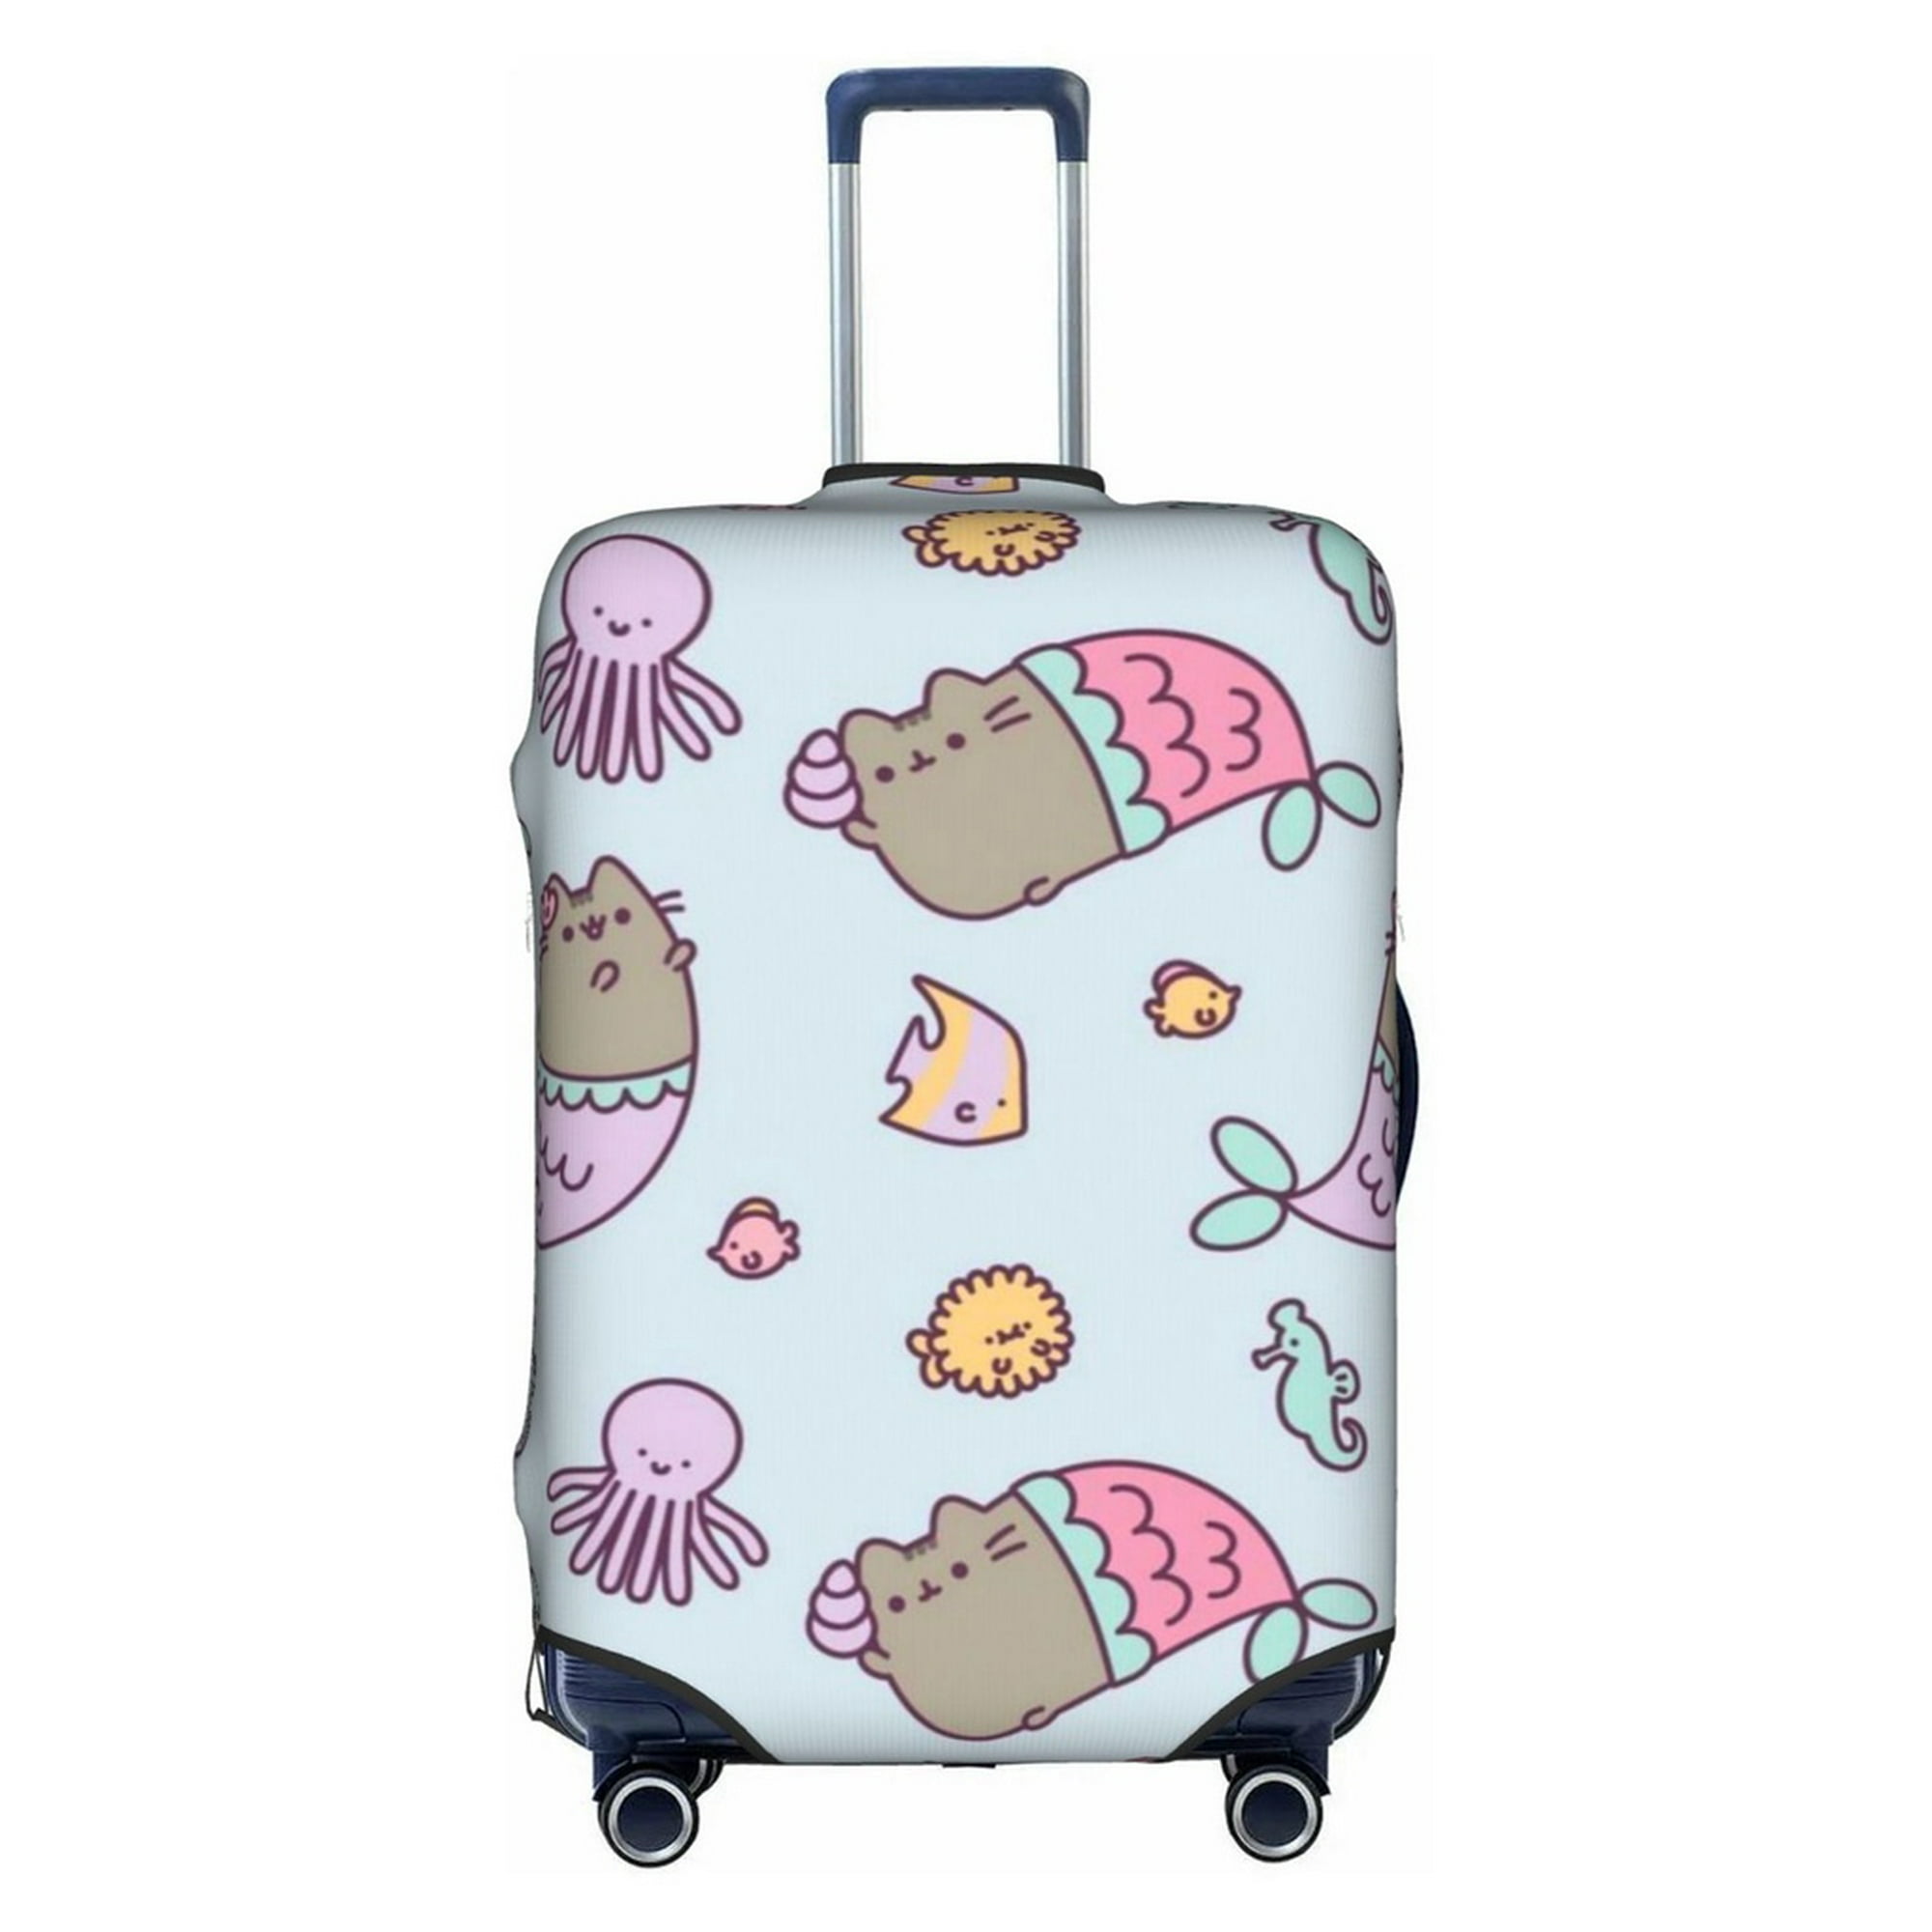 Beabes Peach - Protector de maleta Just Peachy Quote - Fundas para equipaje  de viaje con frutas tropicales, hojas de durazno, funda lavable para